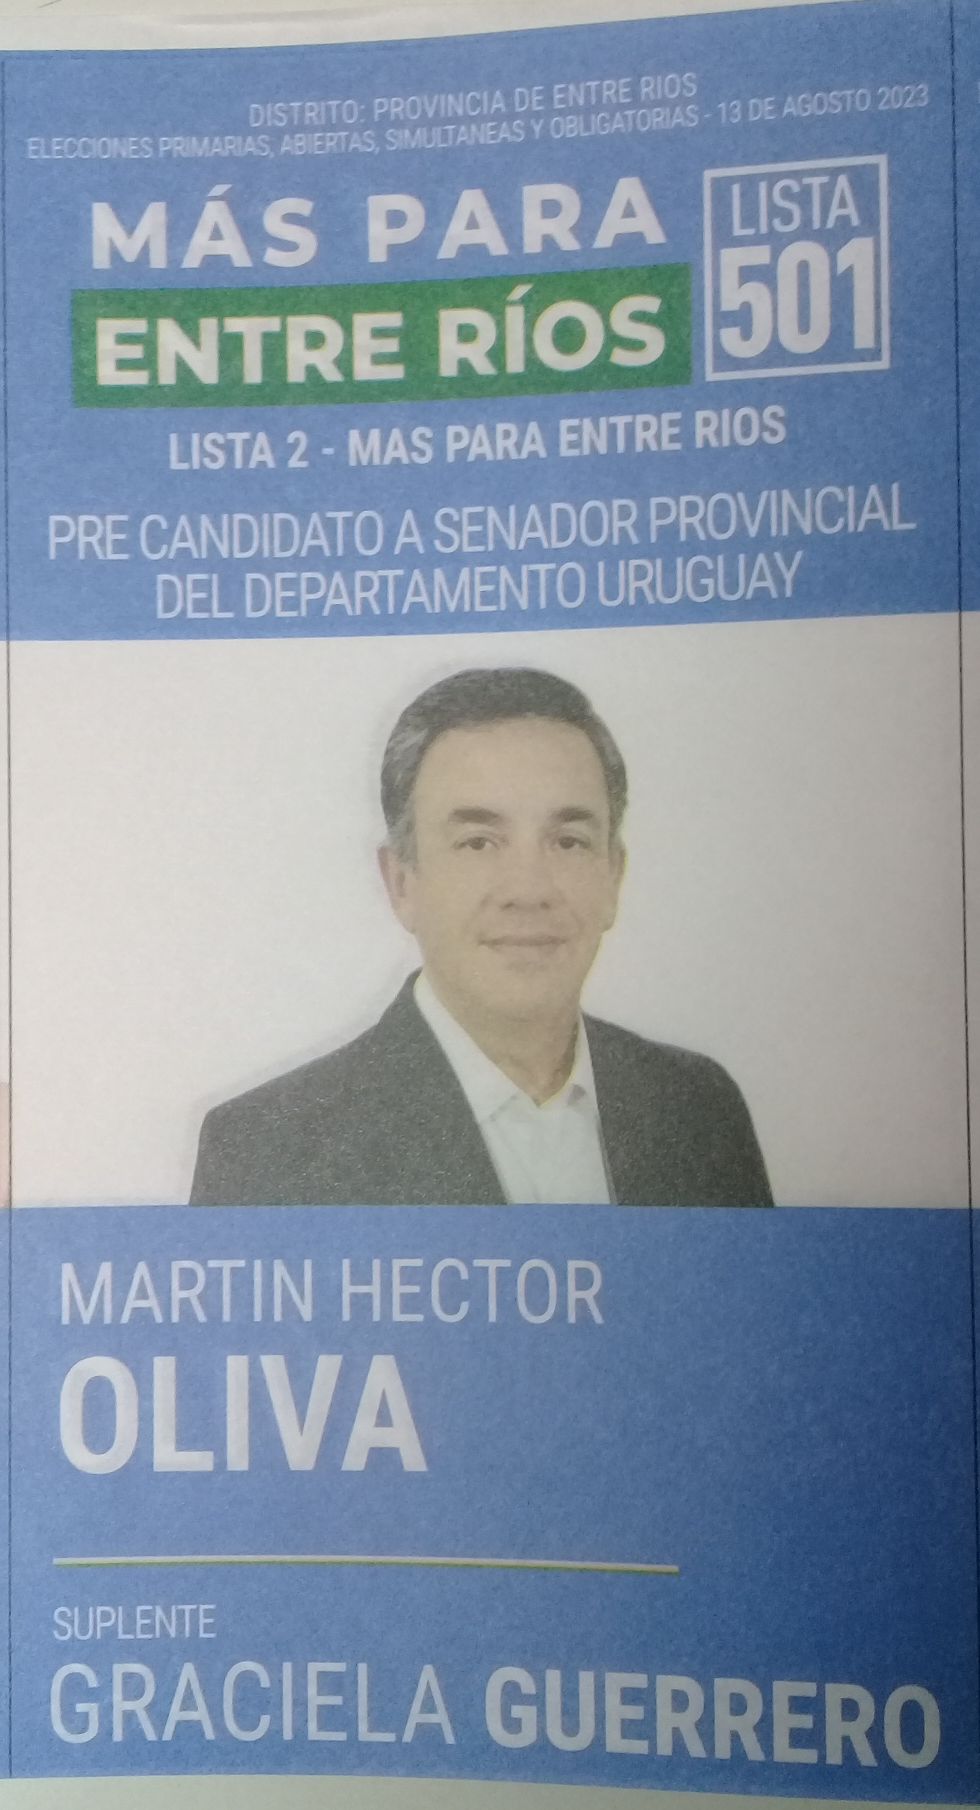 Lista 501, Más Para Entre Ríos, encabezada por Martín Héctor Oliva.